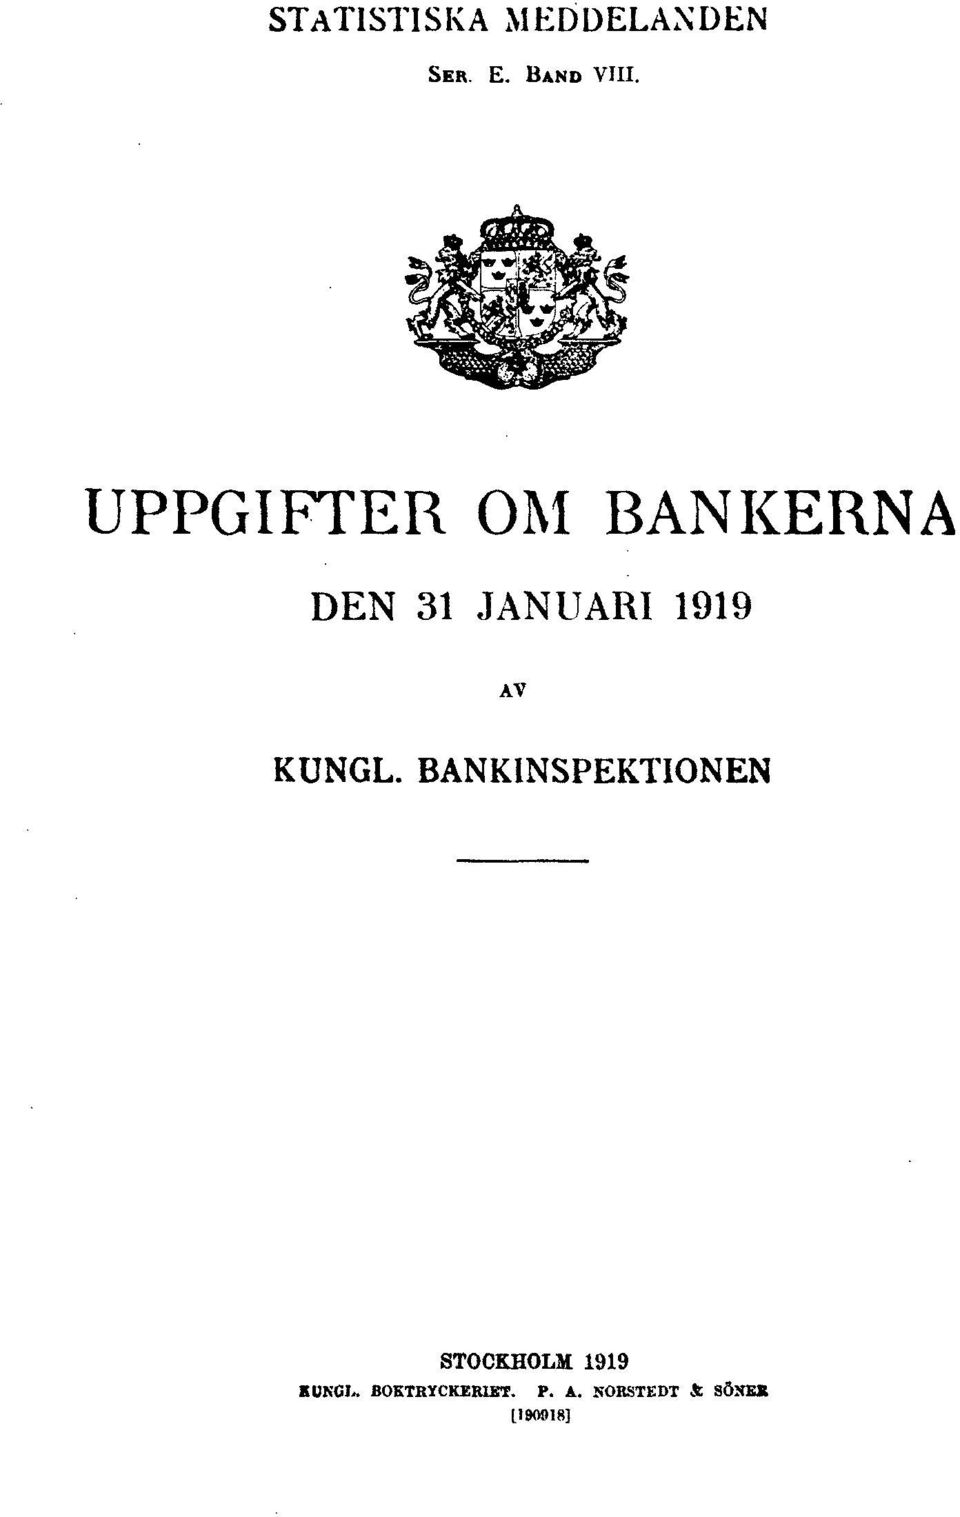 KUNGL. BANKINSPEKTIONEN STOCKHOLM 1919 K UNGL.